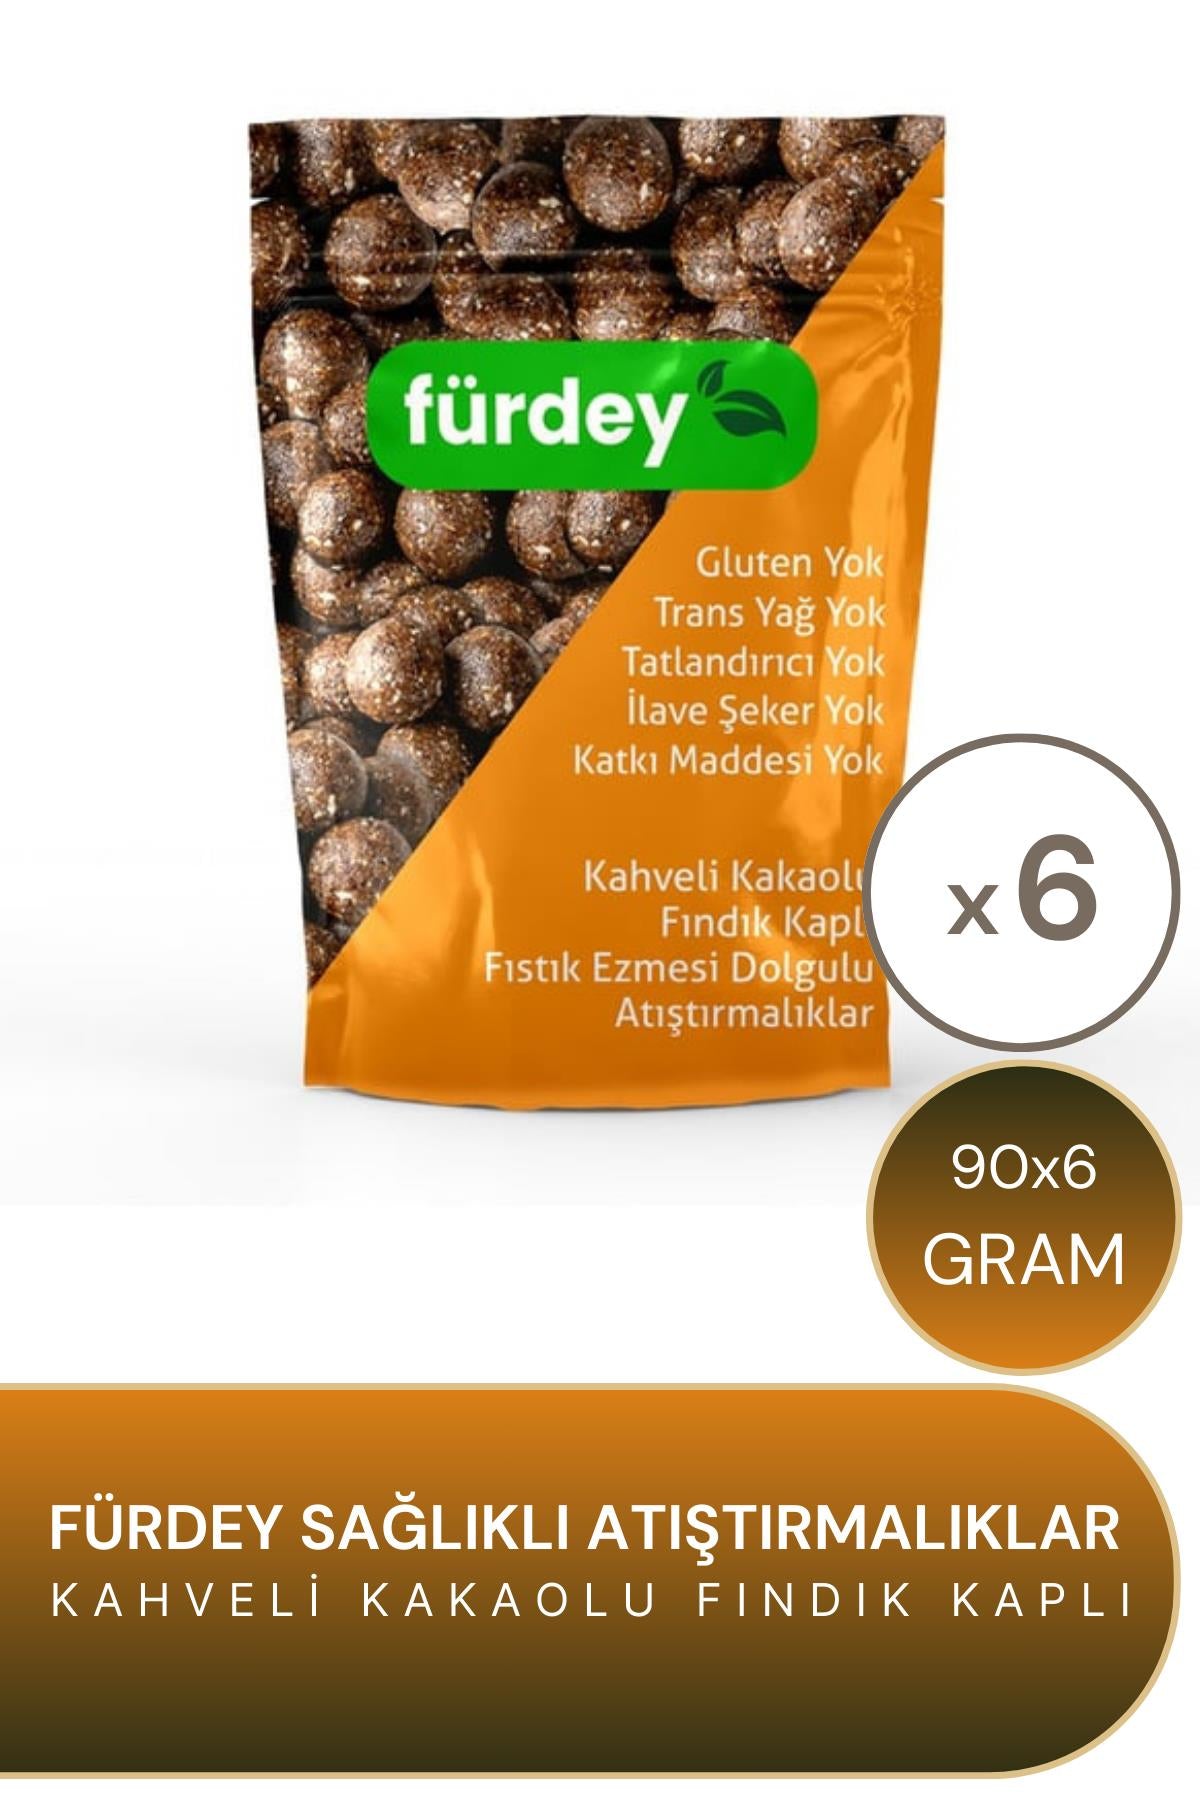 Fürdey Kahveli Kakaolu Fındık Kaplı Sağlıklı Atıştırmalıklar 90 g 6'lı Paket